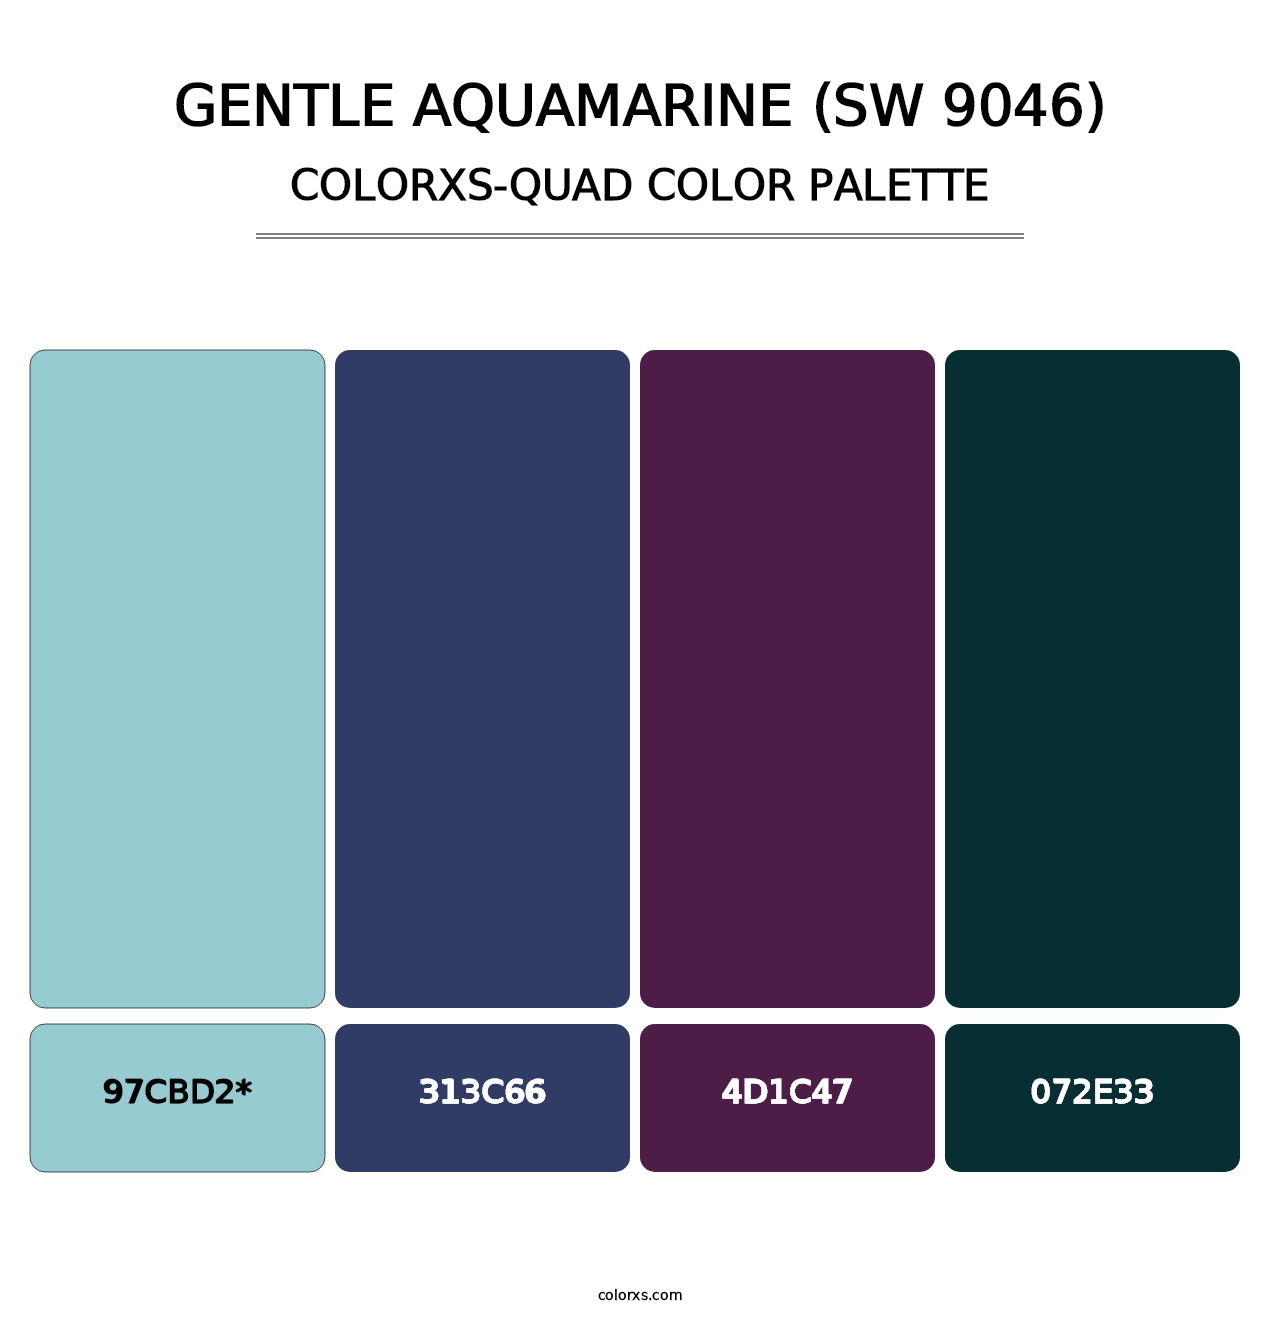 Gentle Aquamarine (SW 9046) - Colorxs Quad Palette